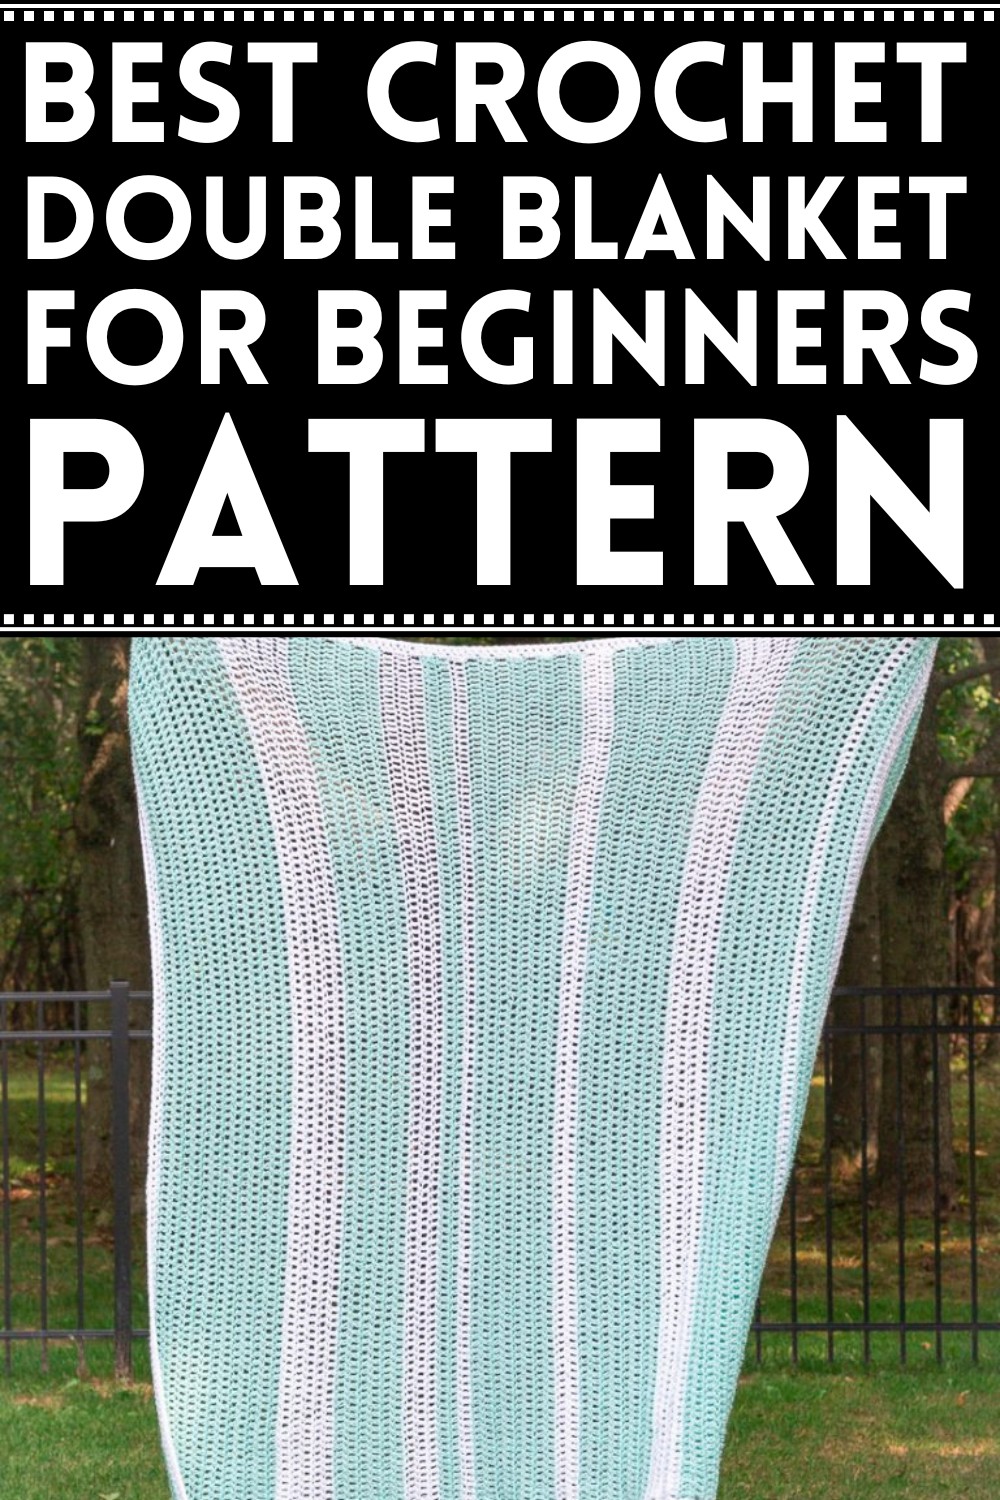 Double Crochet Blanket For Beginners